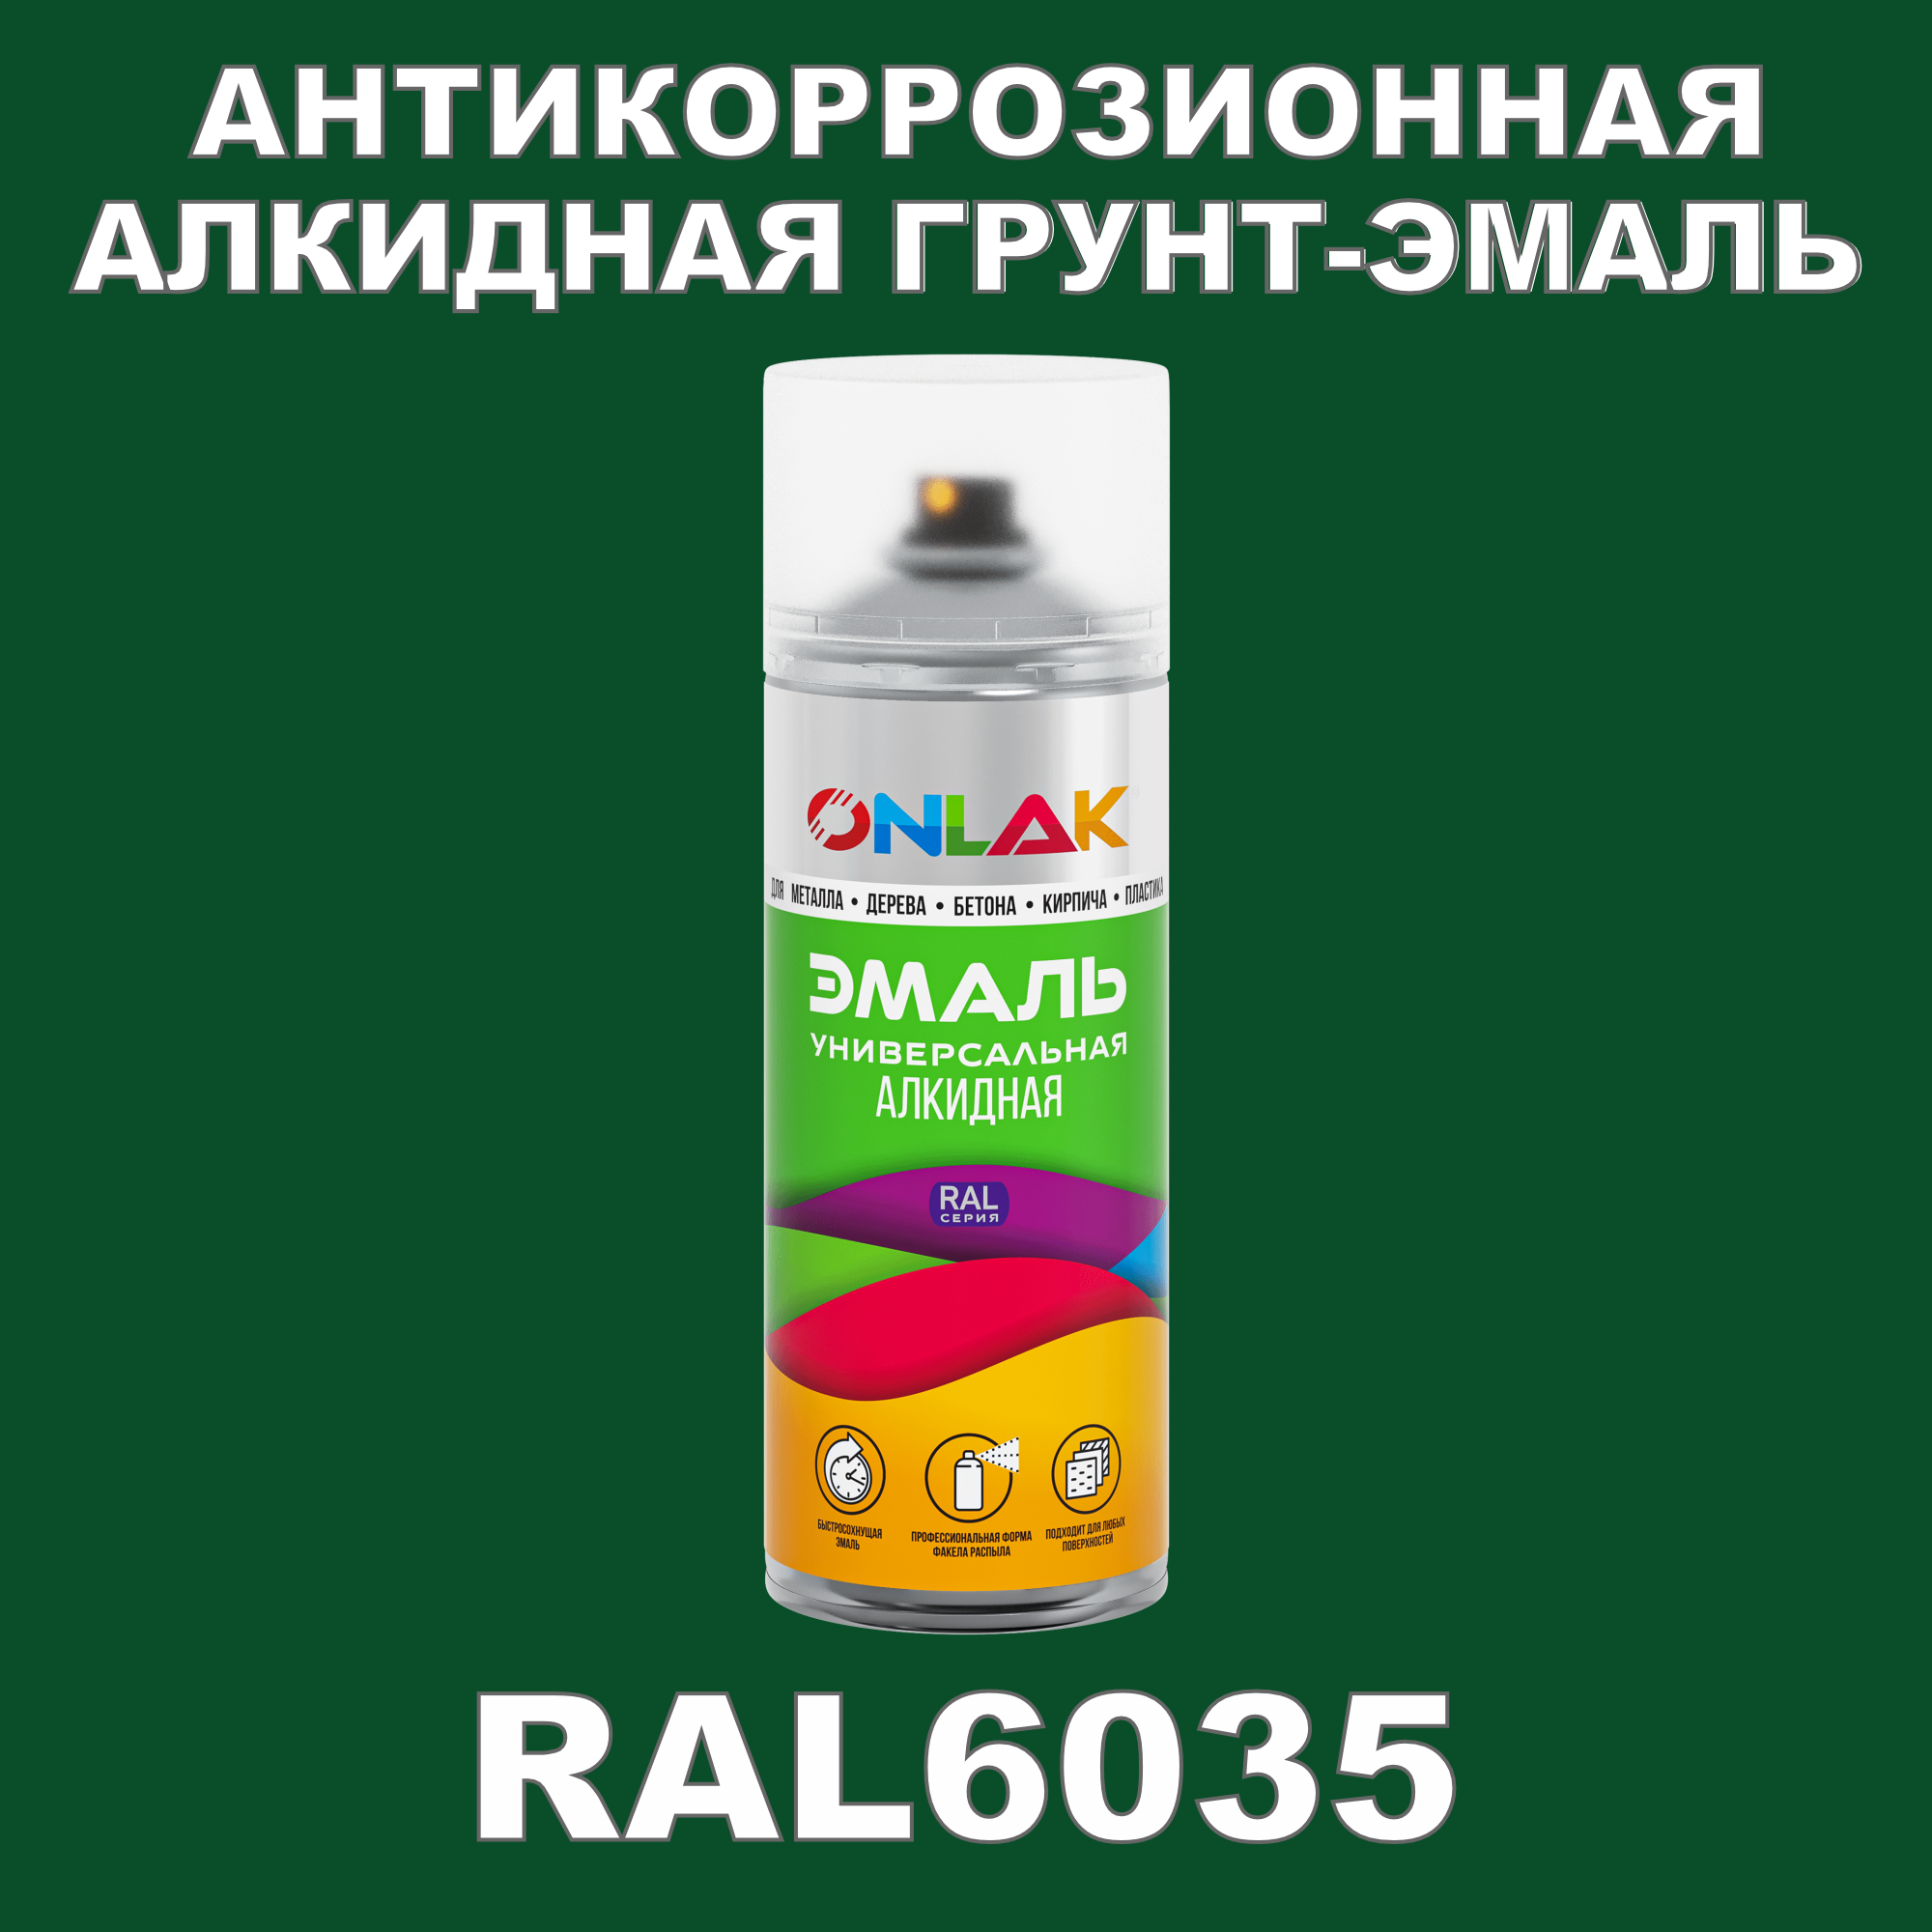 Антикоррозионная грунт-эмаль ONLAK RAL6035 полуматовая для металла и защиты от ржавчины